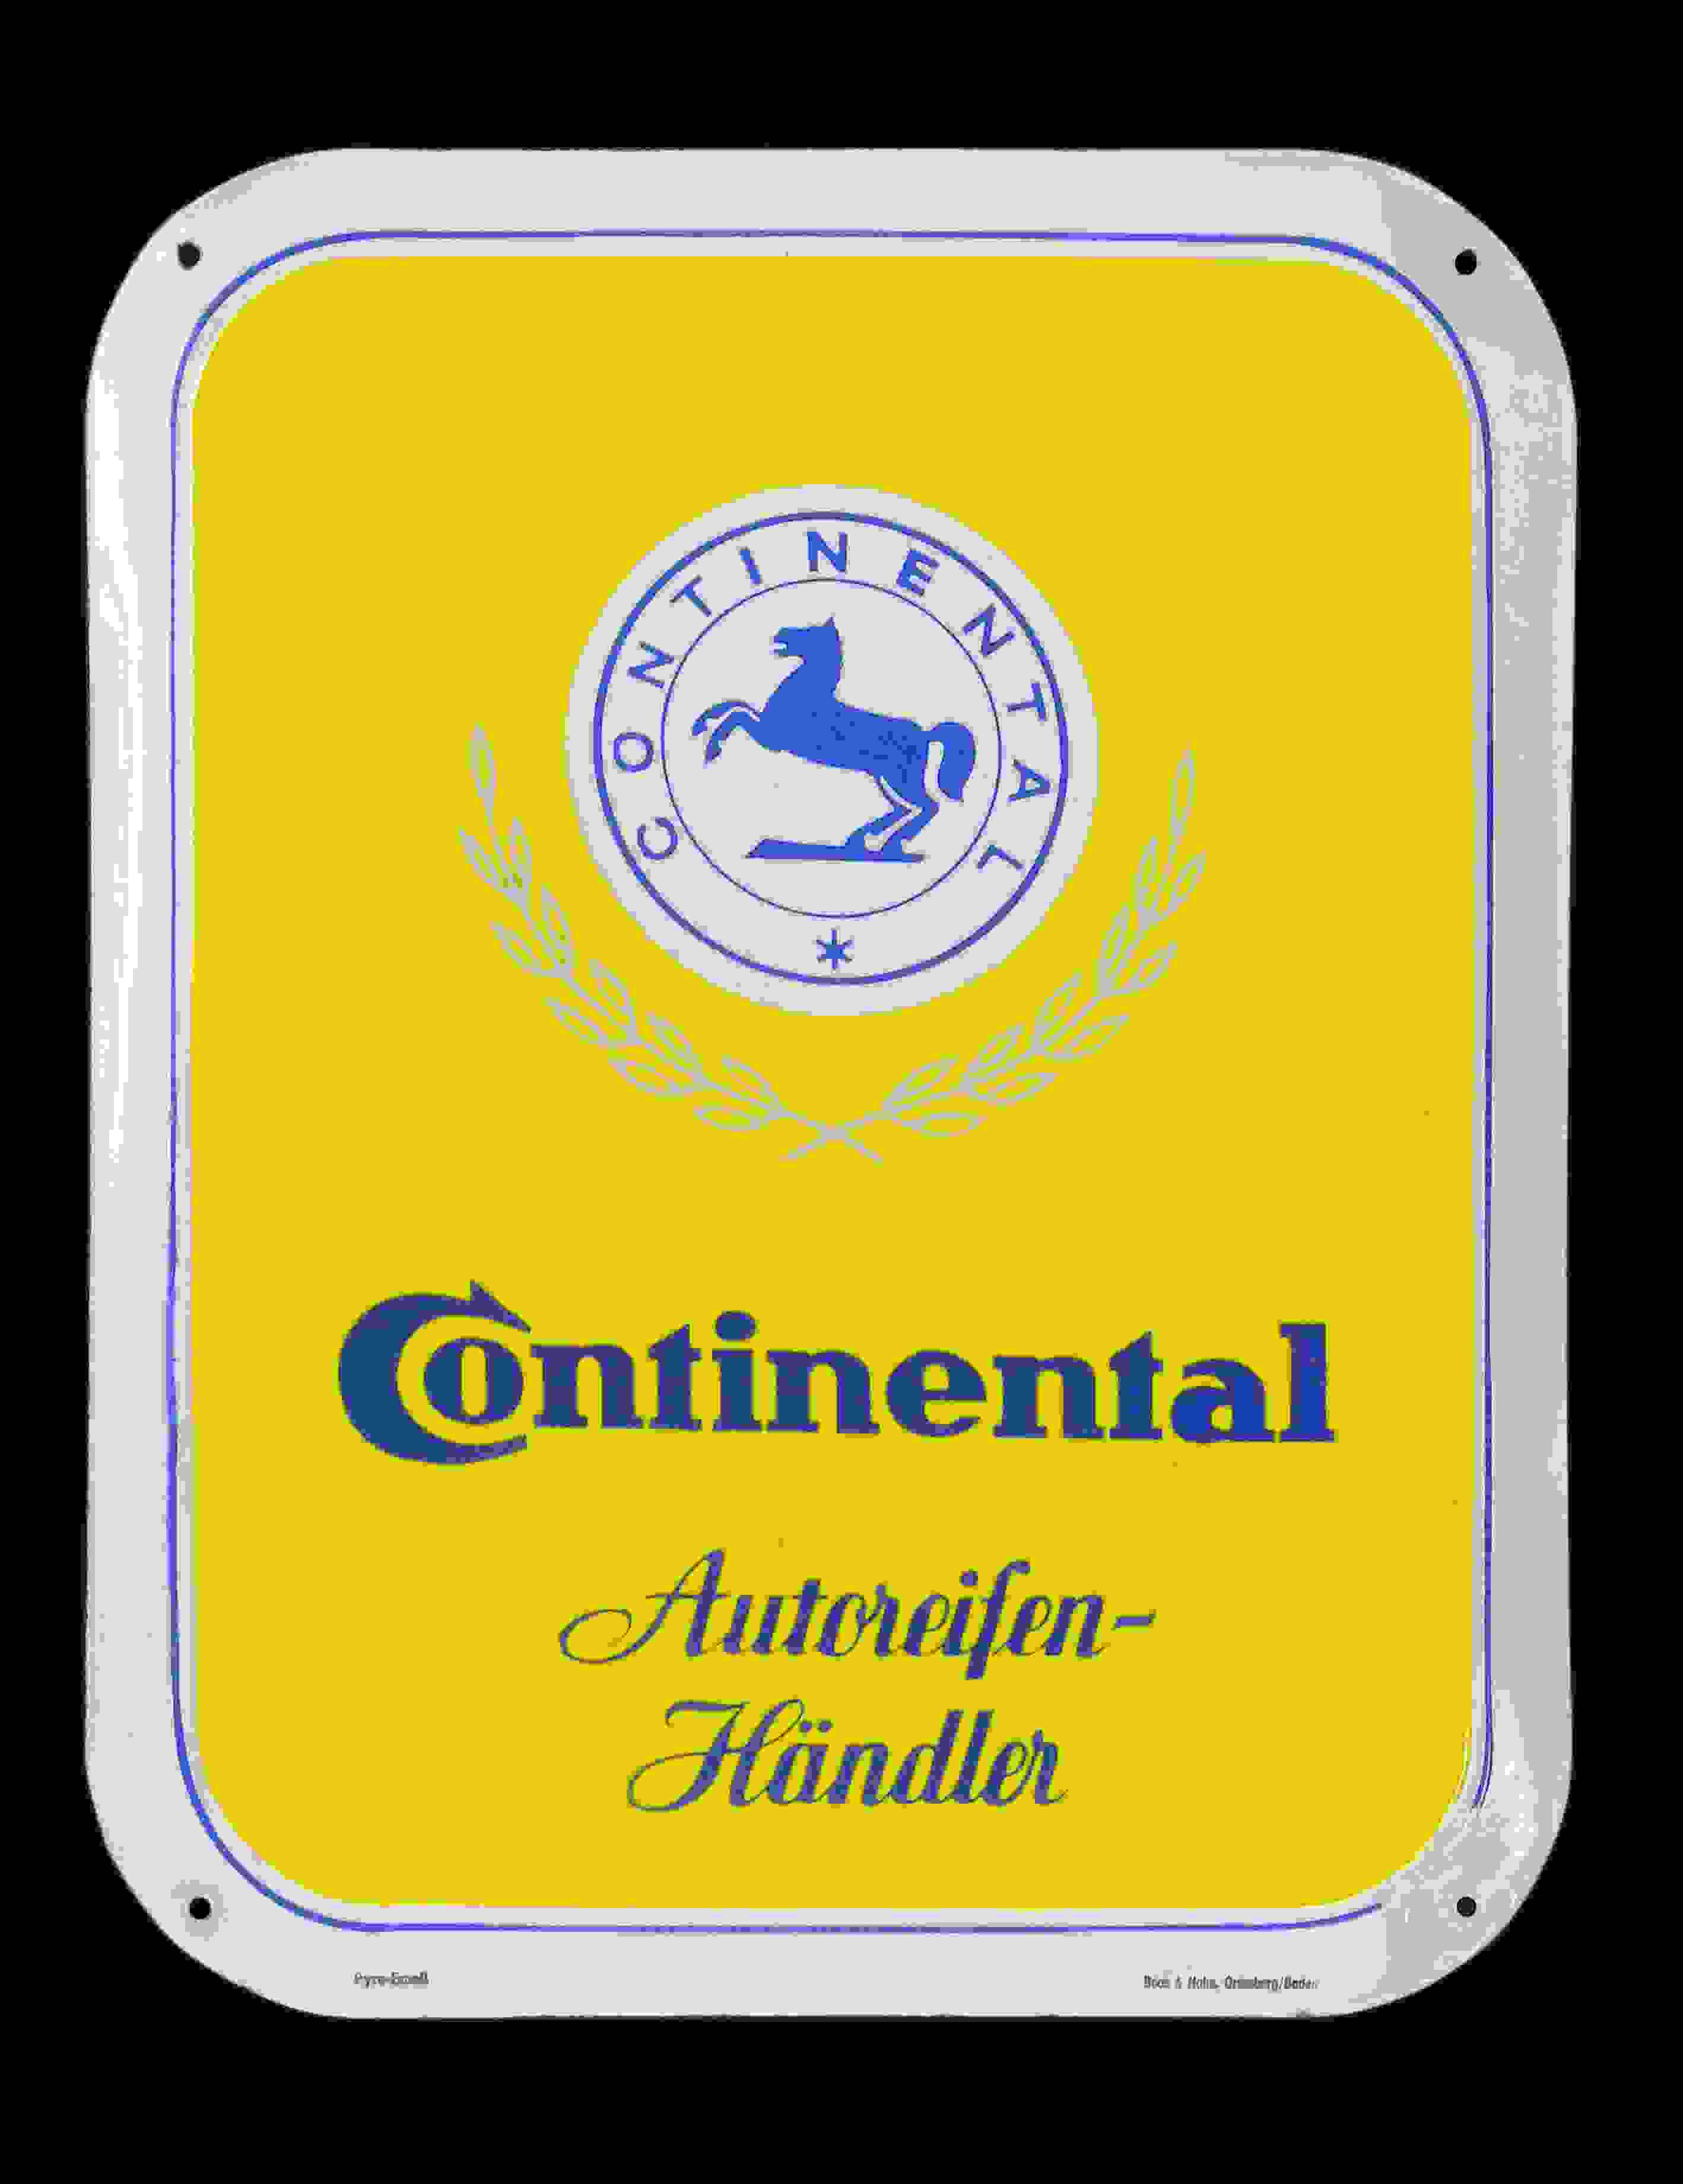 Continental Autoreifen Händler 